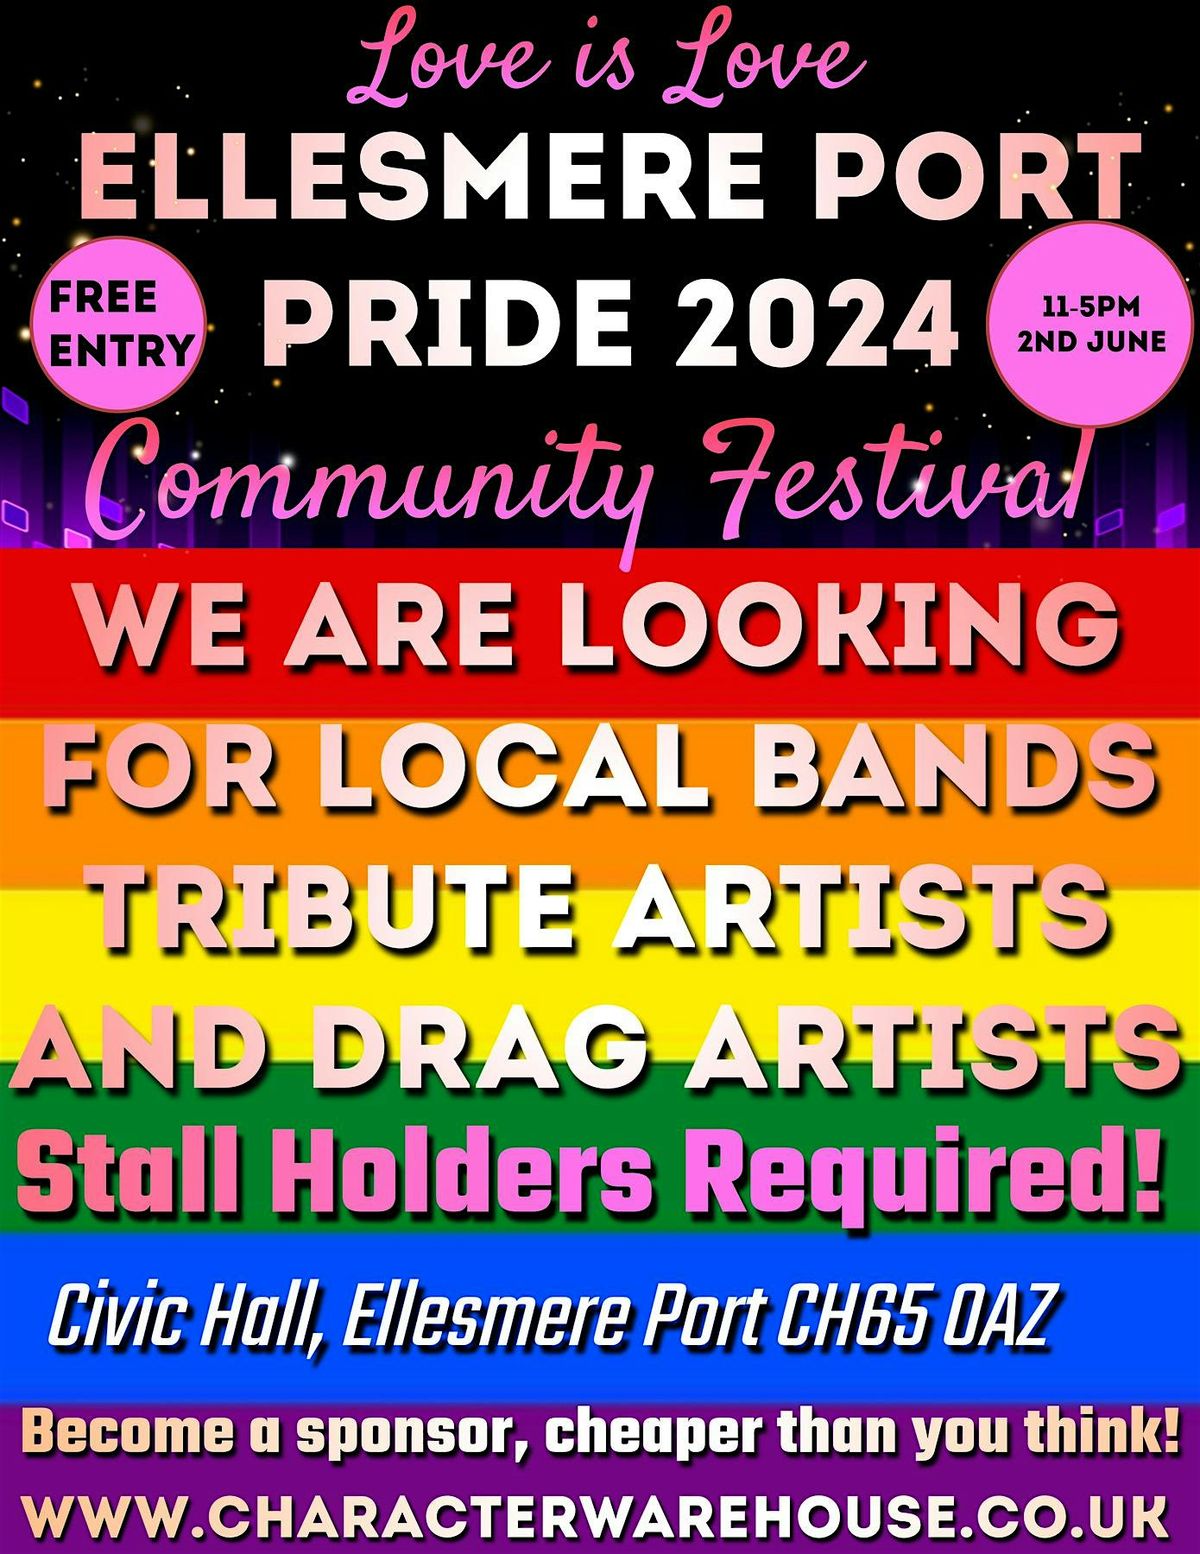 Ellesmere Port Pride 2024